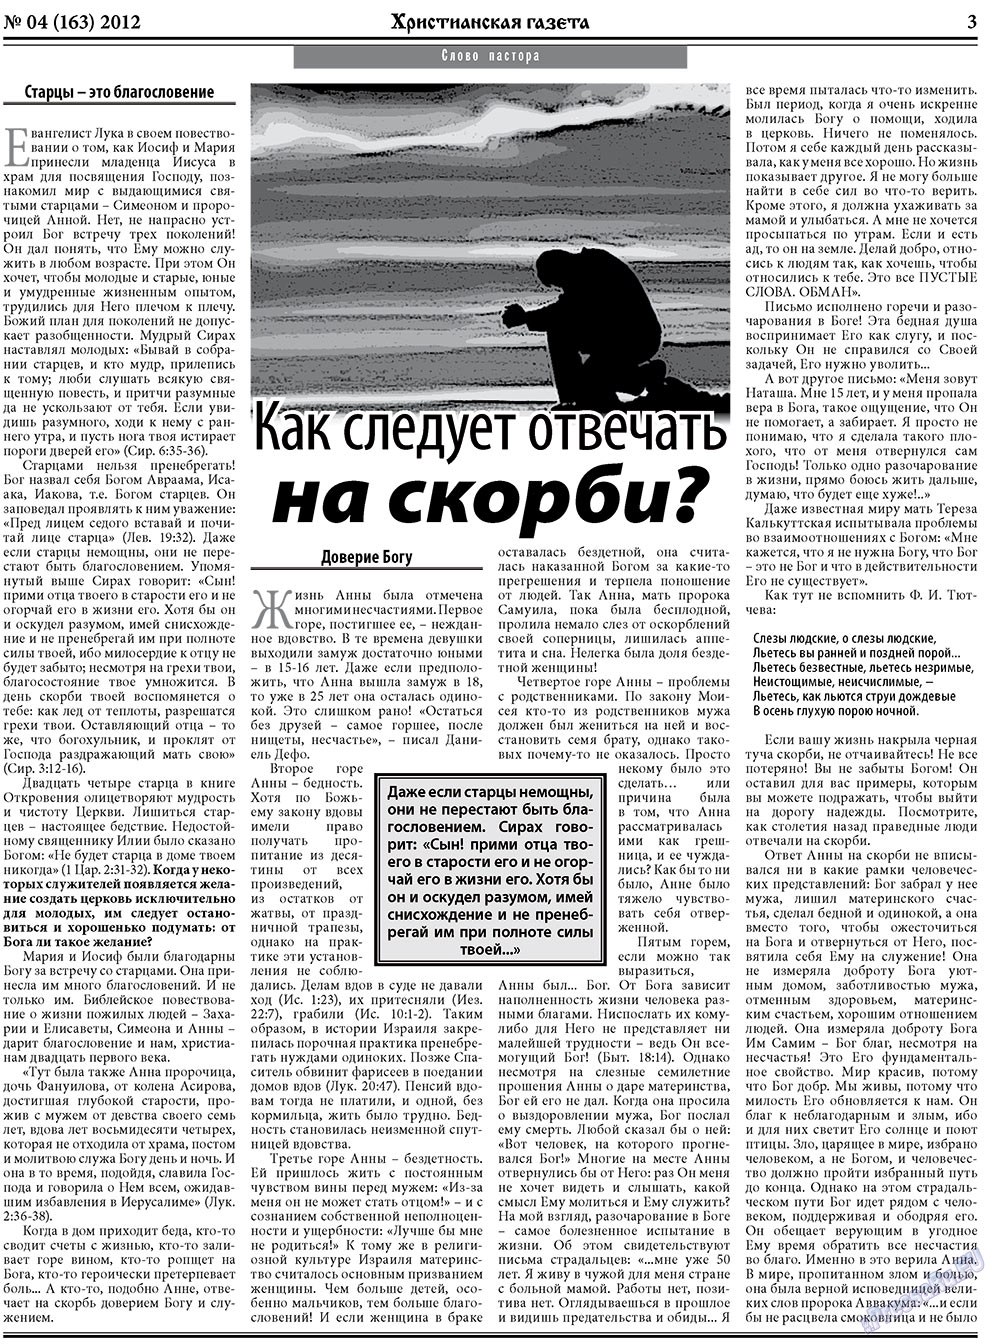 Христианская газета (газета). 2012 год, номер 4, стр. 3